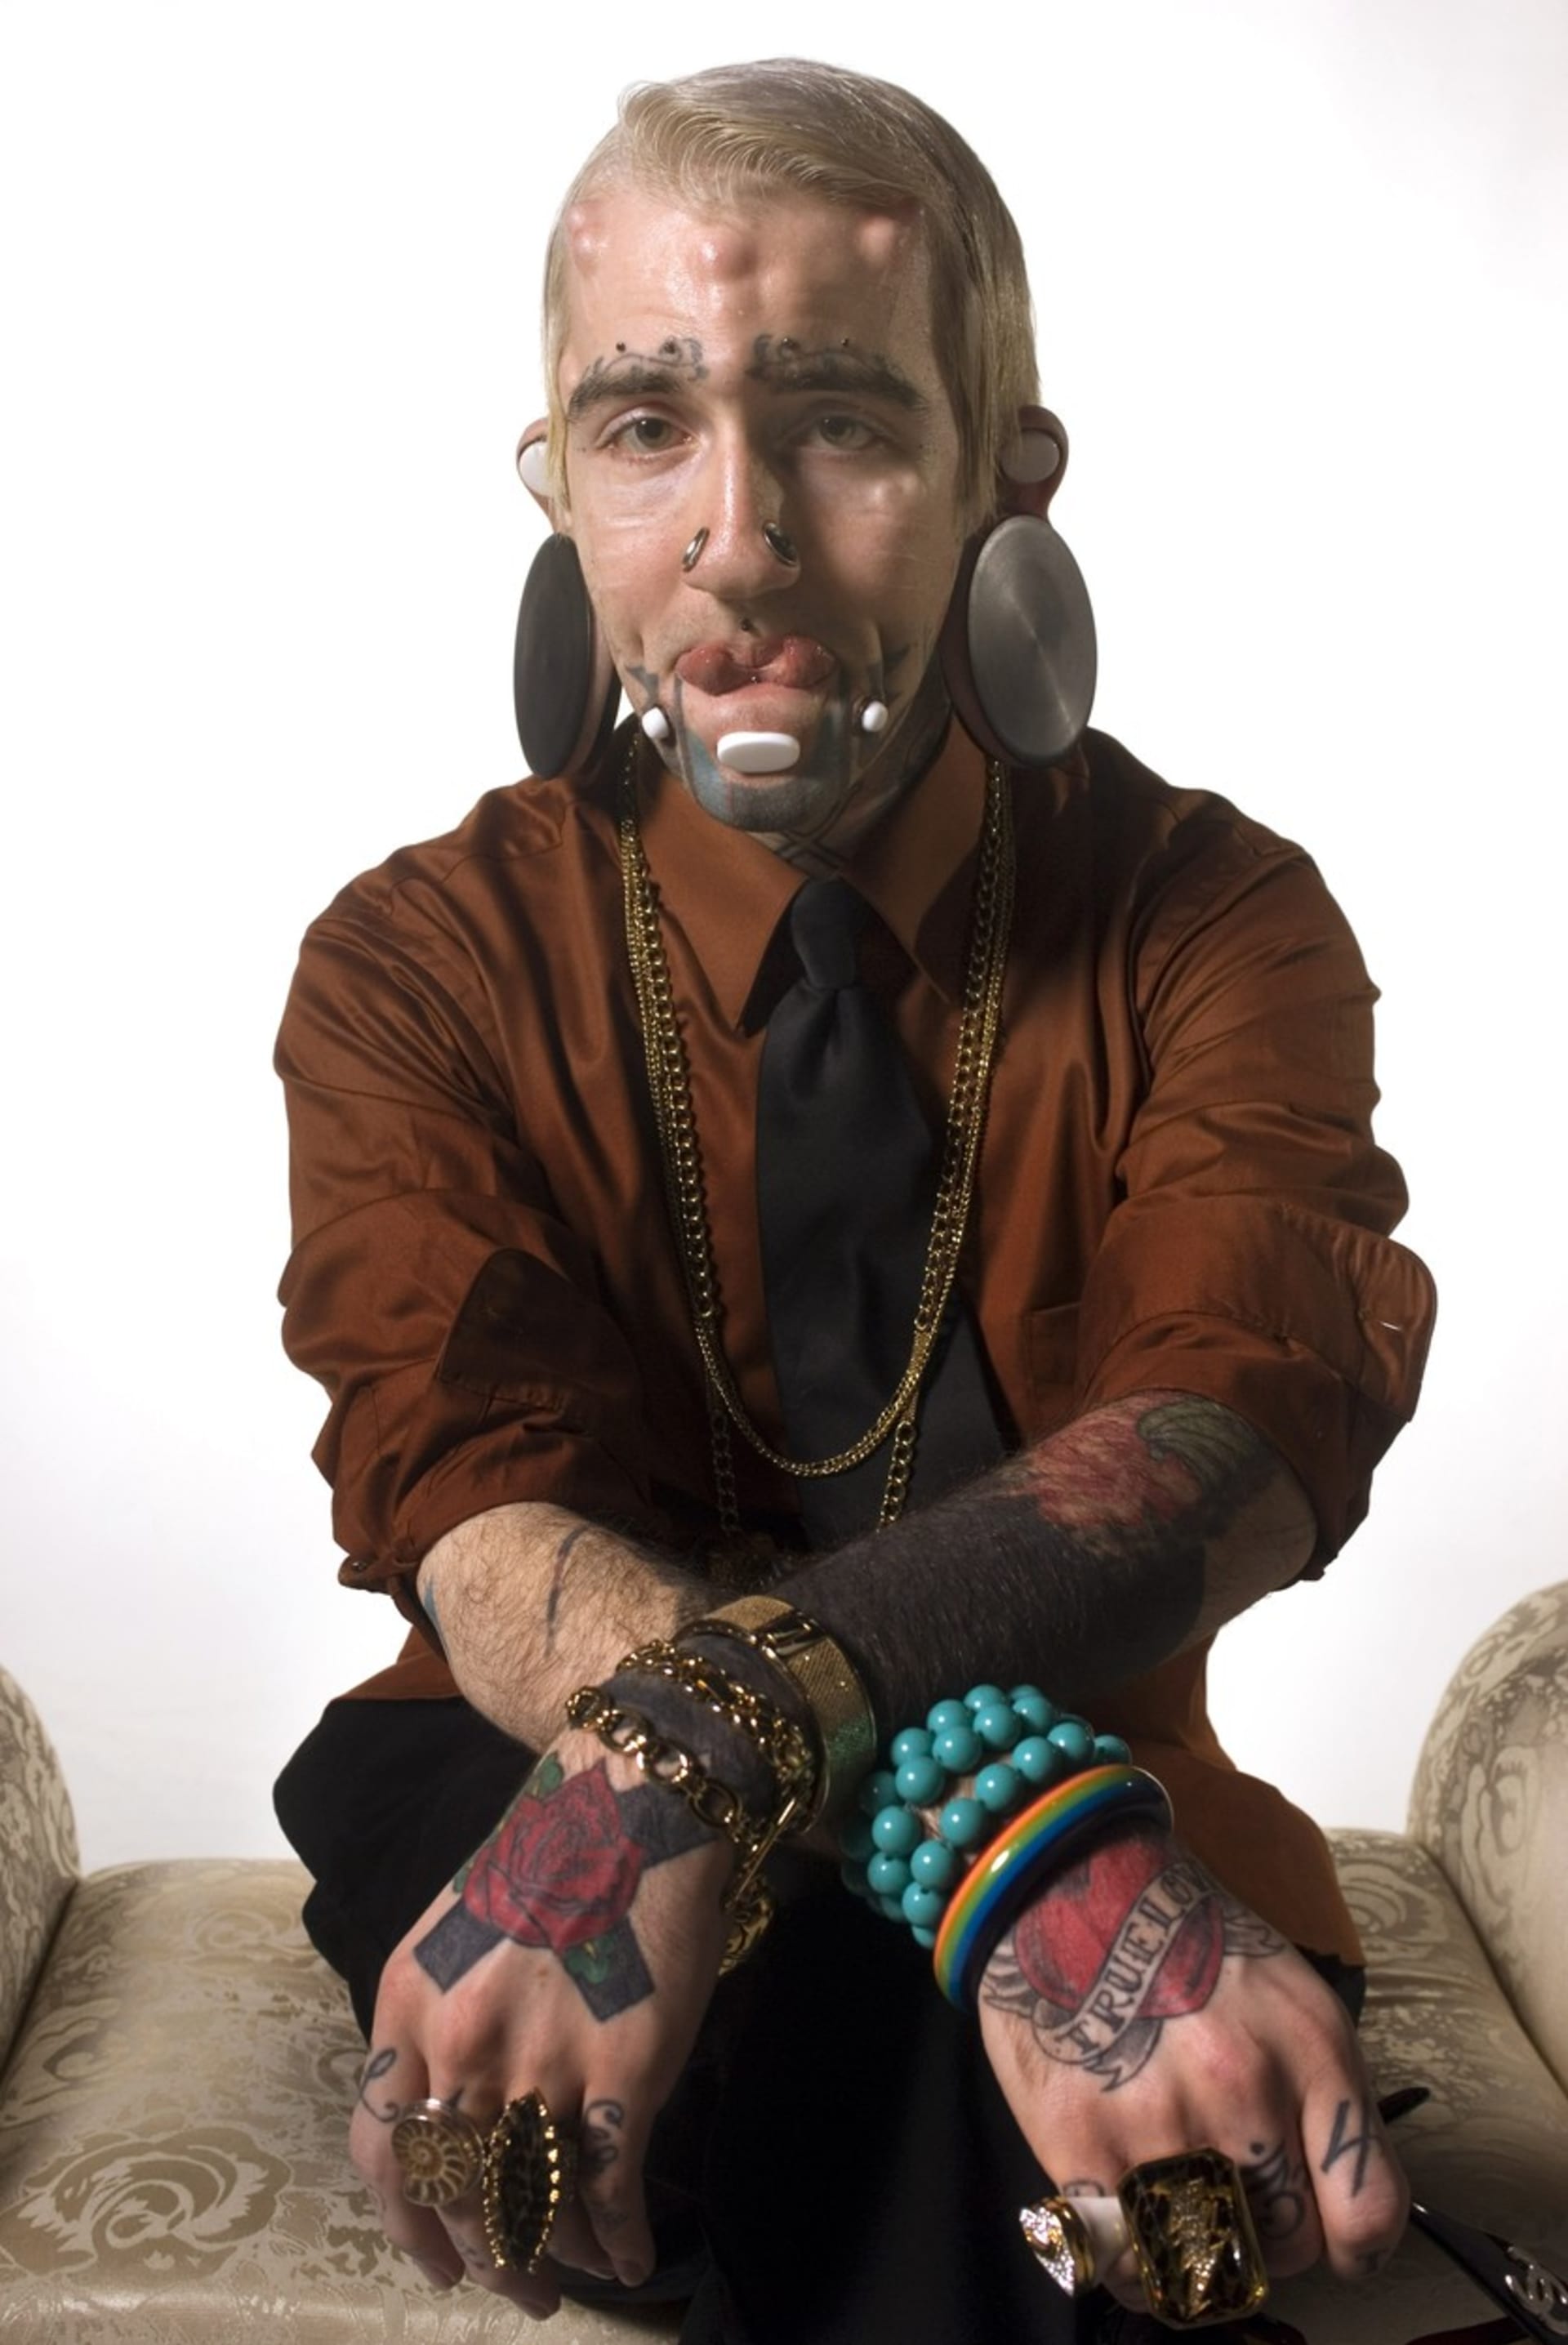 Pauly Unstoppable - několik podkožních implantátů, obří tunely v uších, tetovačky apod.